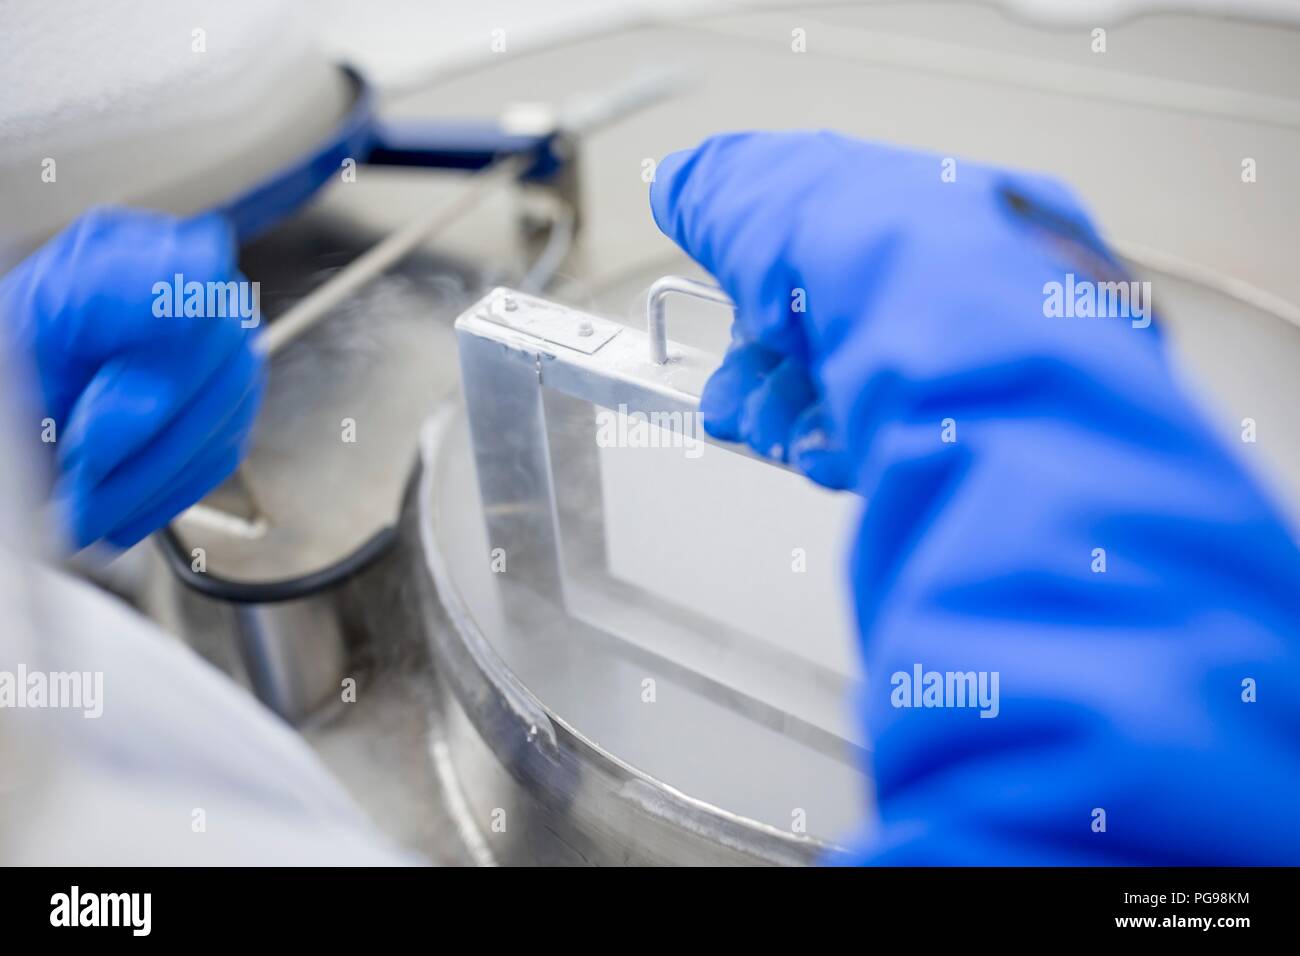 Le stockage des échantillons de cellules souches Technicien en cryostockage. Ils ont été congelés dans l'azote liquide pour les préserver. Les cellules souches sont une source potentielle de cellules pour réparer des tissus endommagés dans des maladies telles que la maladie de Parkinson et le diabète insulino-dépendant. Banque D'Images